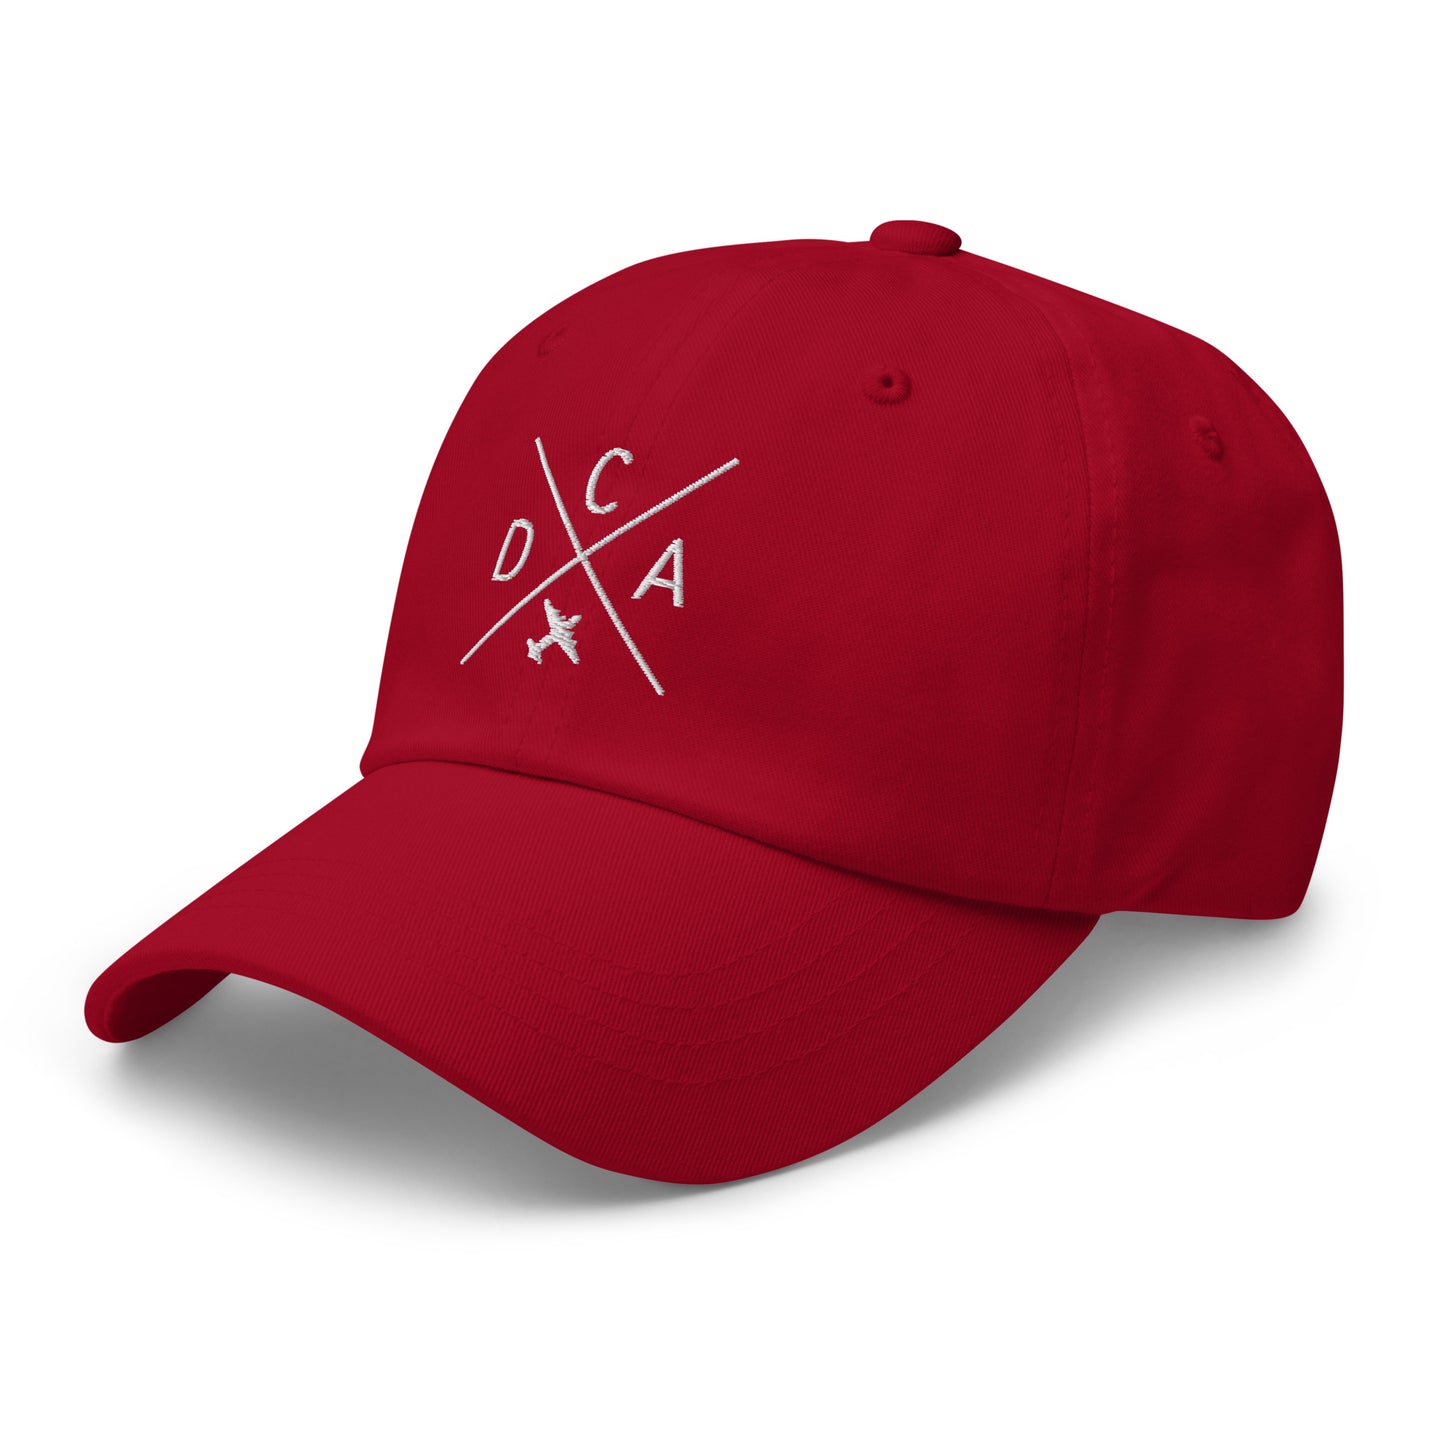 Crossed-X Dad Hat - White • DCA Washington • YHM Designs - Image 21